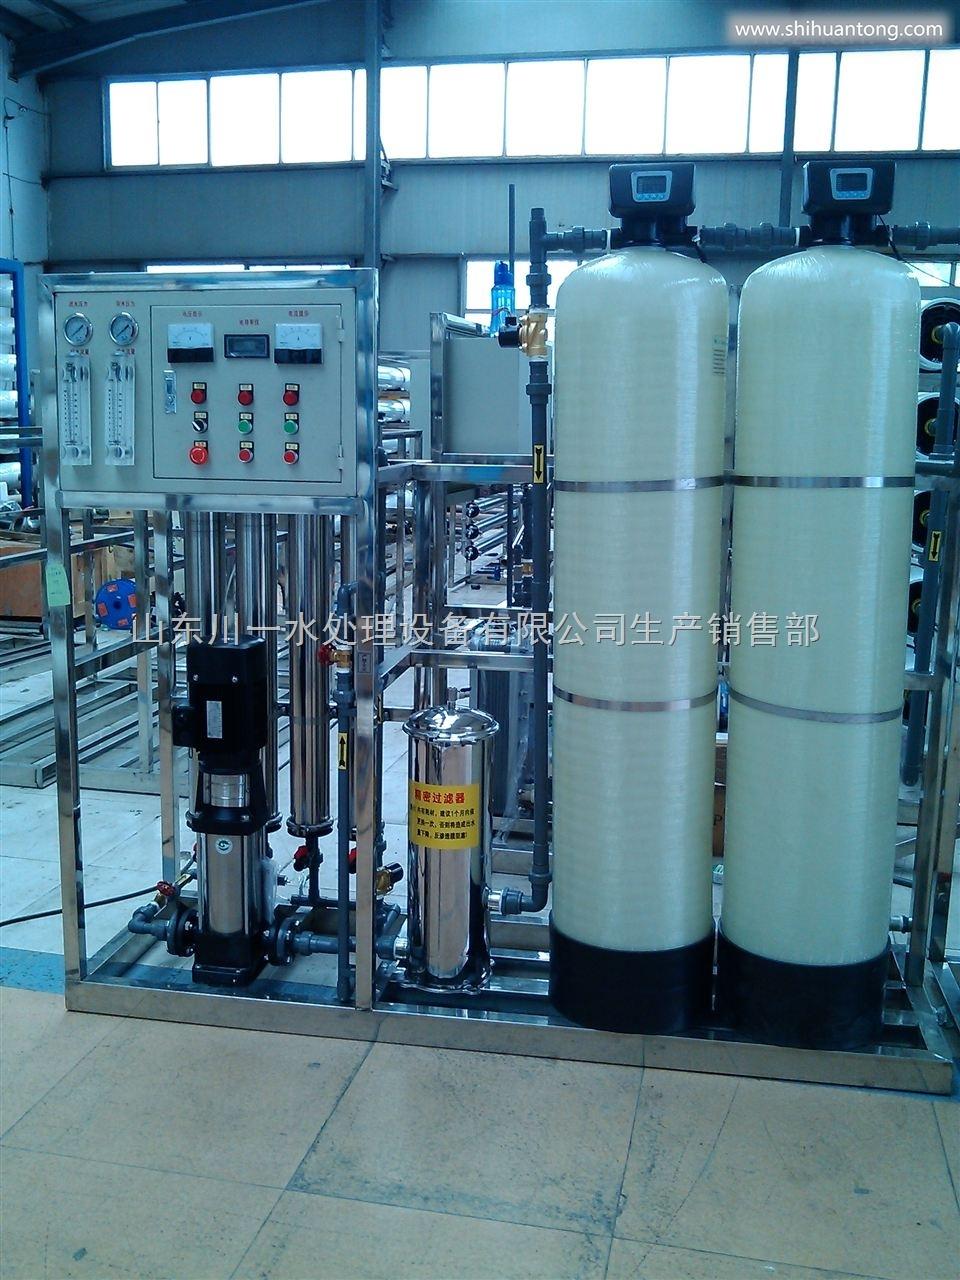 山东烟台食品生产水处理设备反渗透设备价格